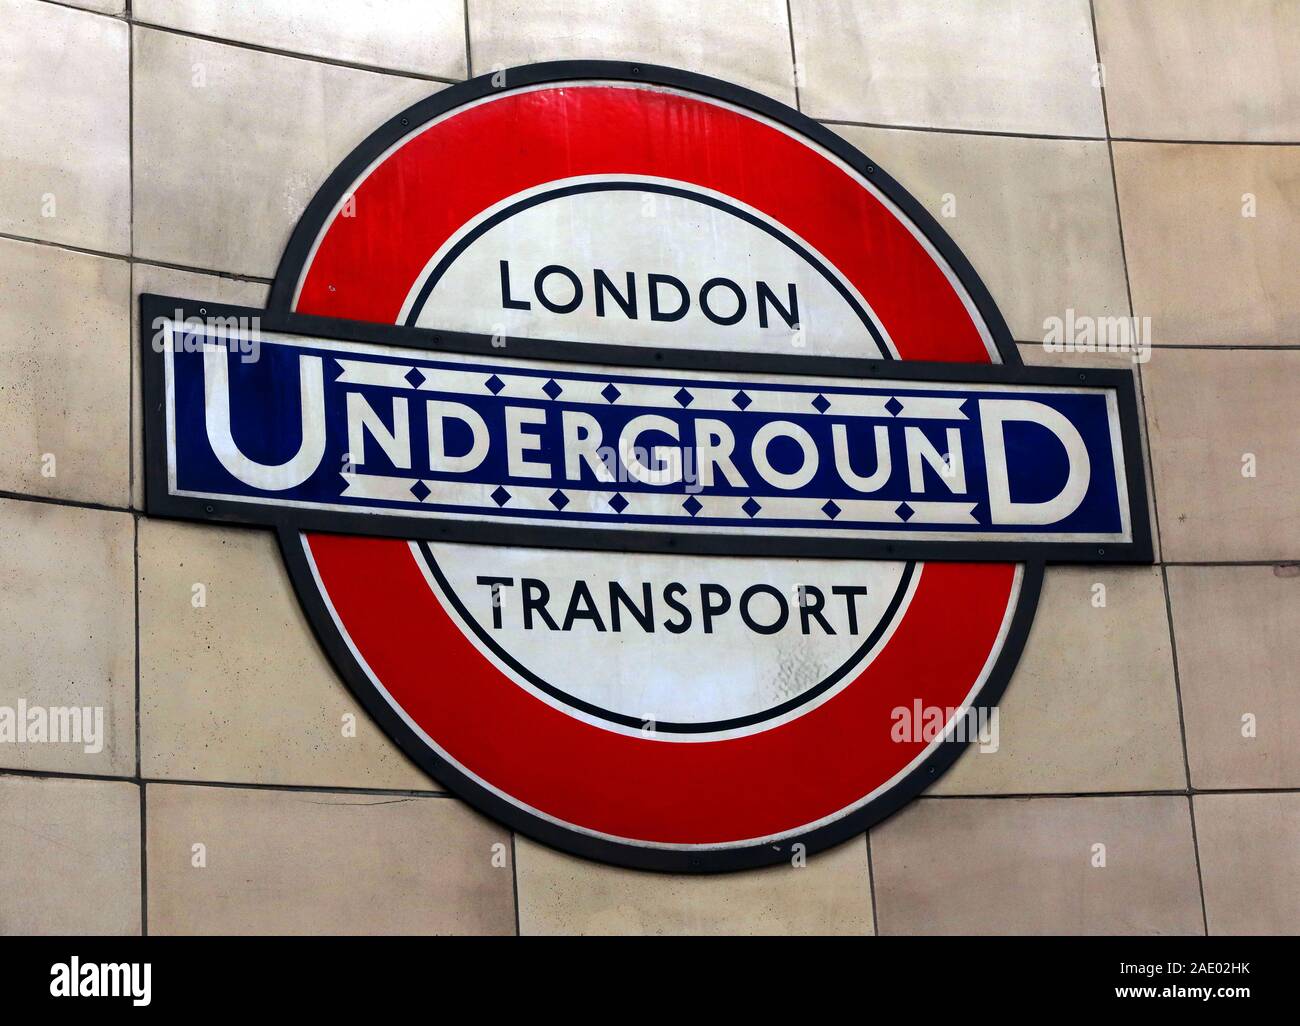 London Underground roundel Sign, London Transport, England,UK Stock Photo